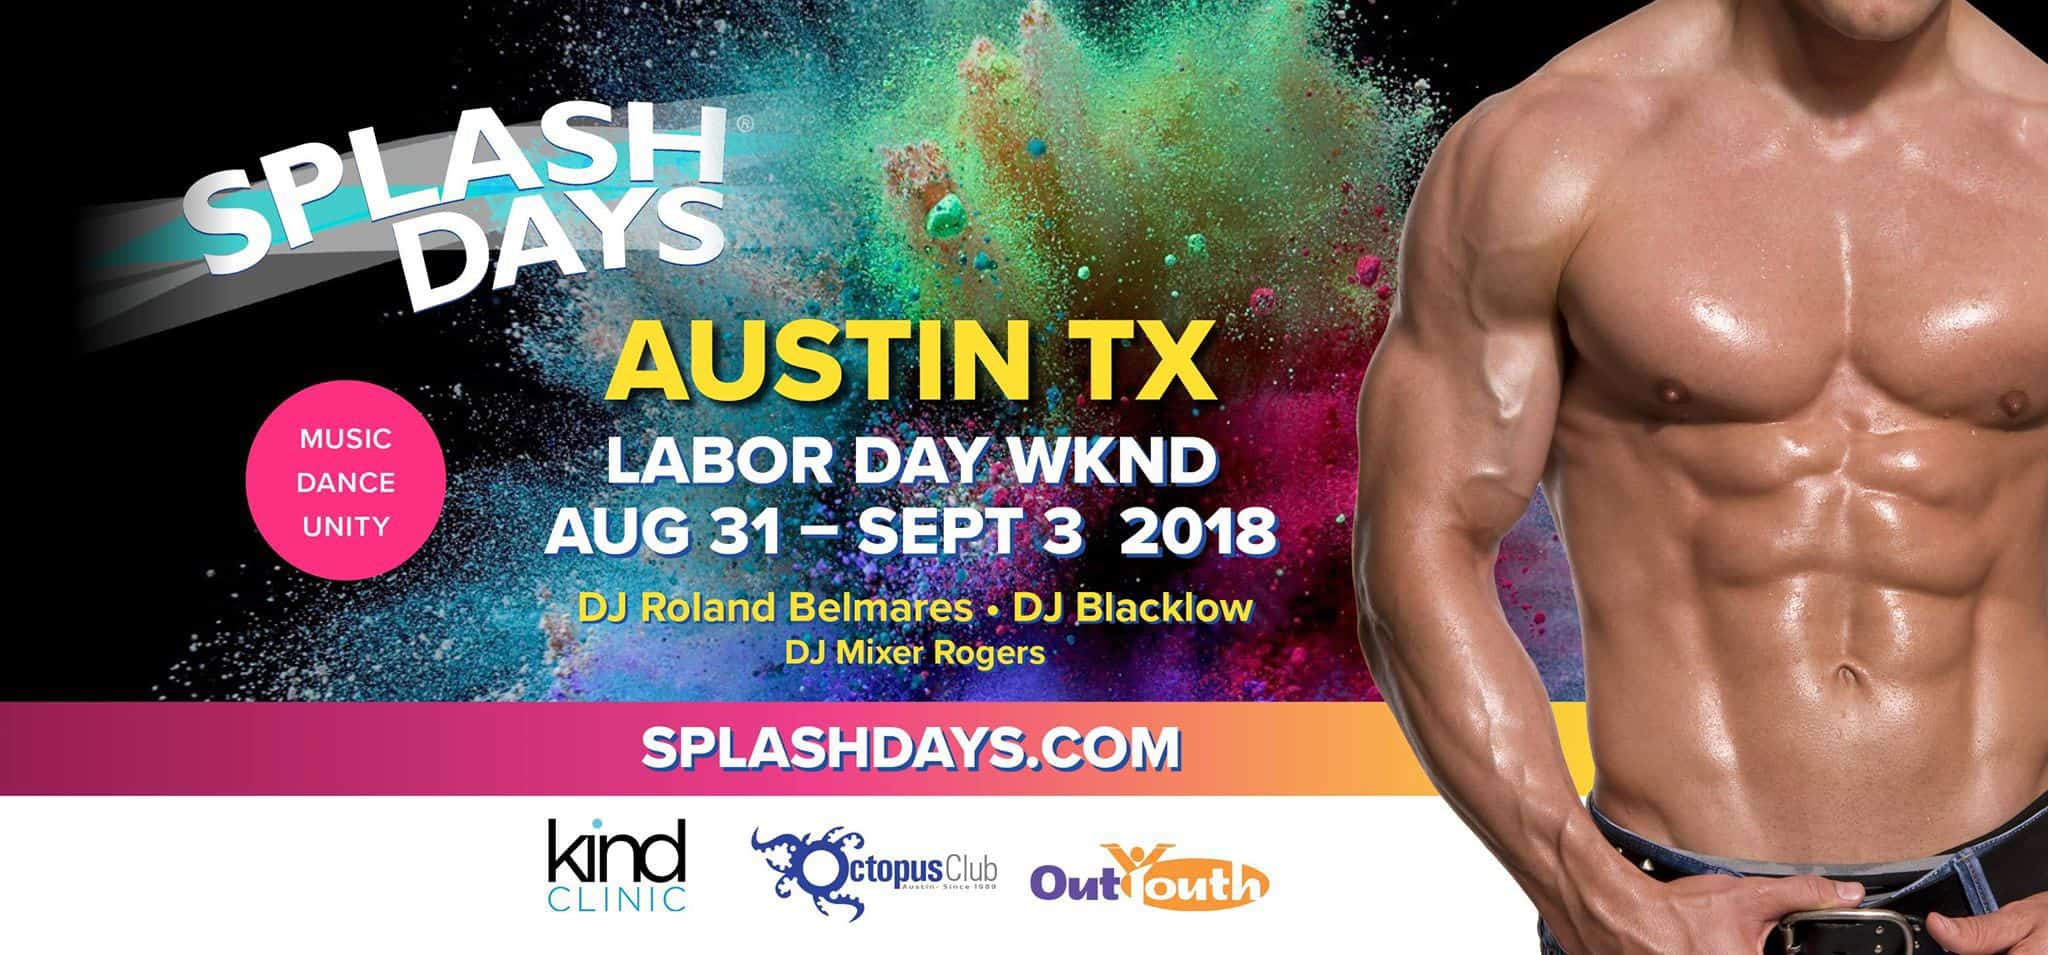 Splash giorni 2018 Austin